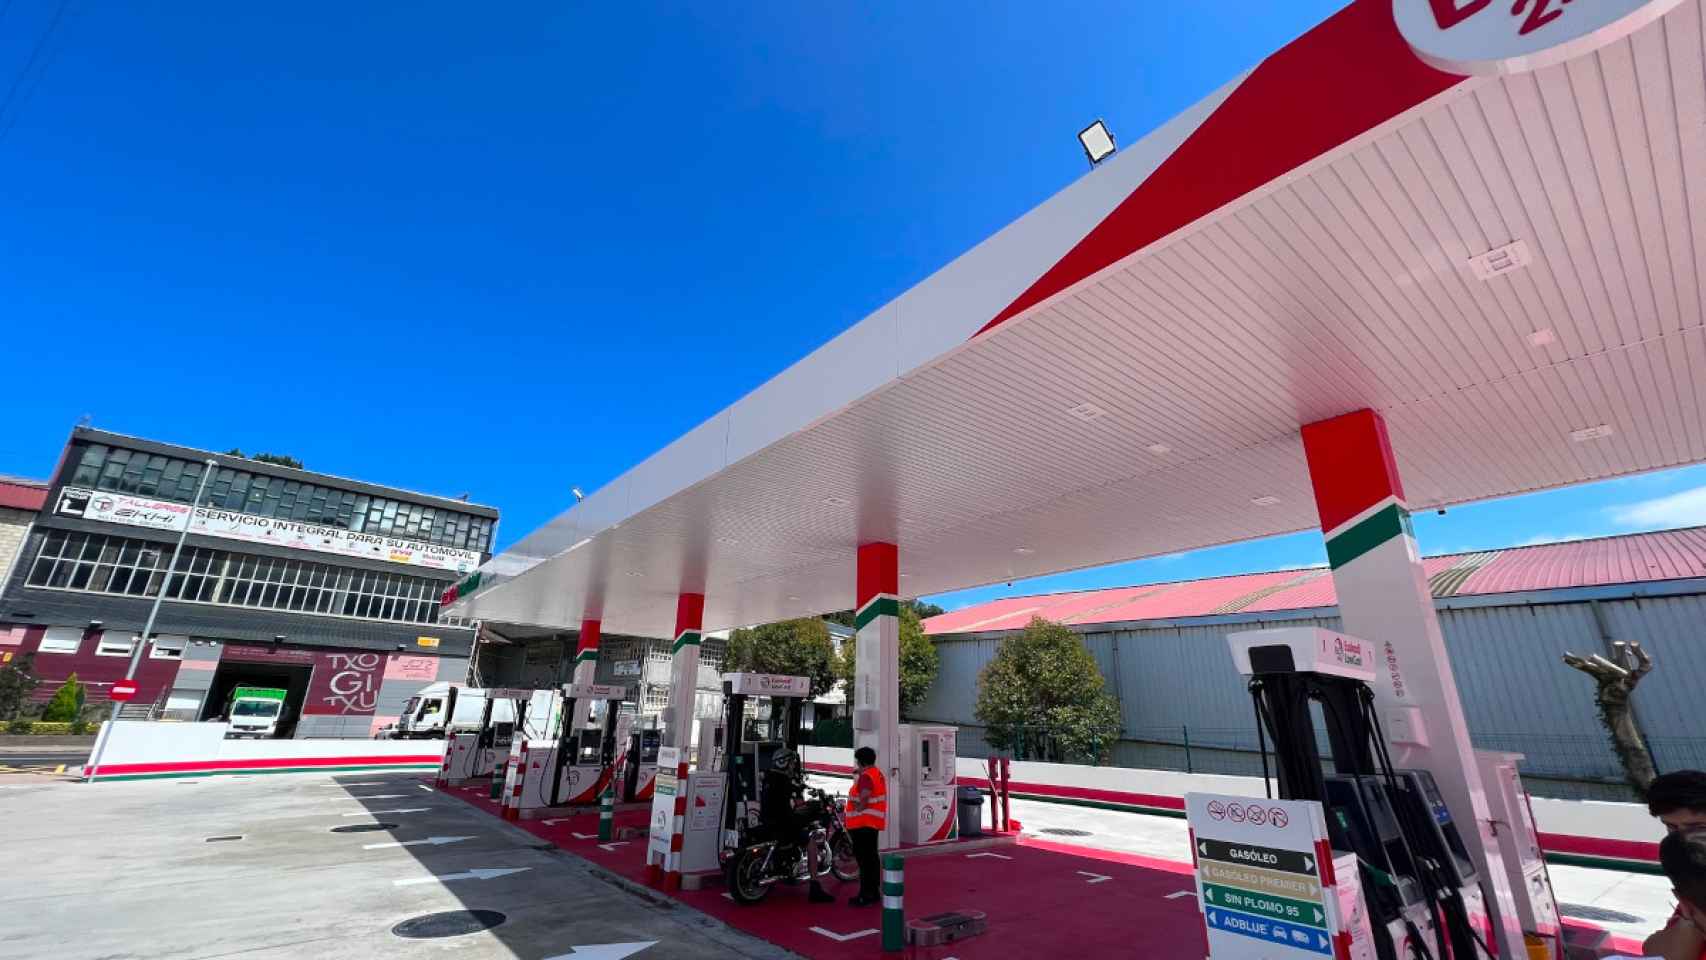 Euskadi Low Cost abrió una nueva gasolinera en Urretxu a principios del mes de marzo.